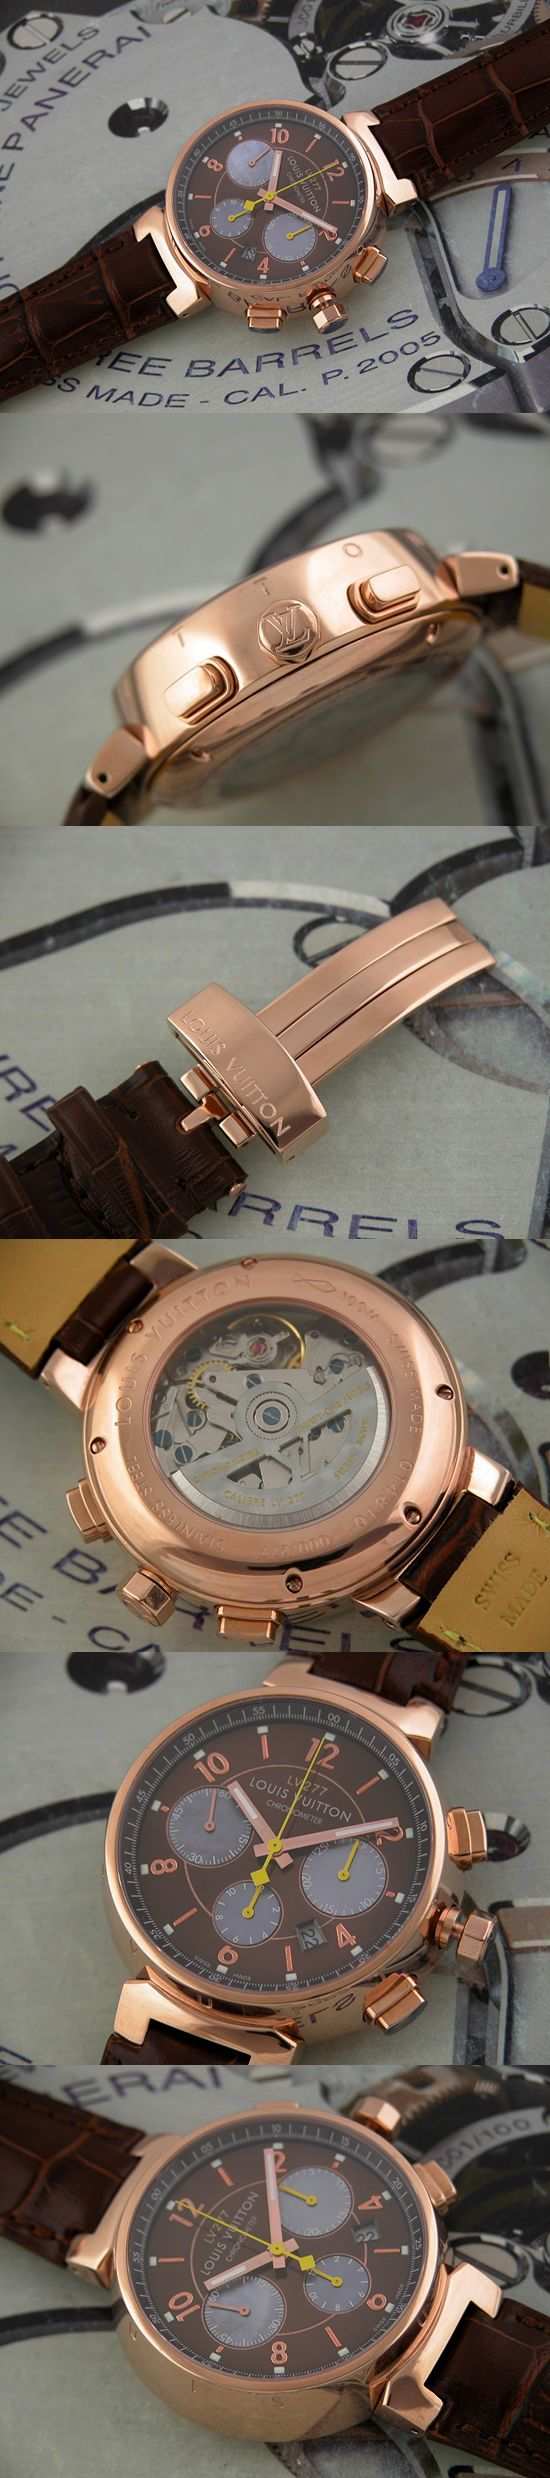 おしゃれなブランド時計がルイヴィトン-タンブール-LOUIS VUITTON-Q11450-ag-男性用を提供します.